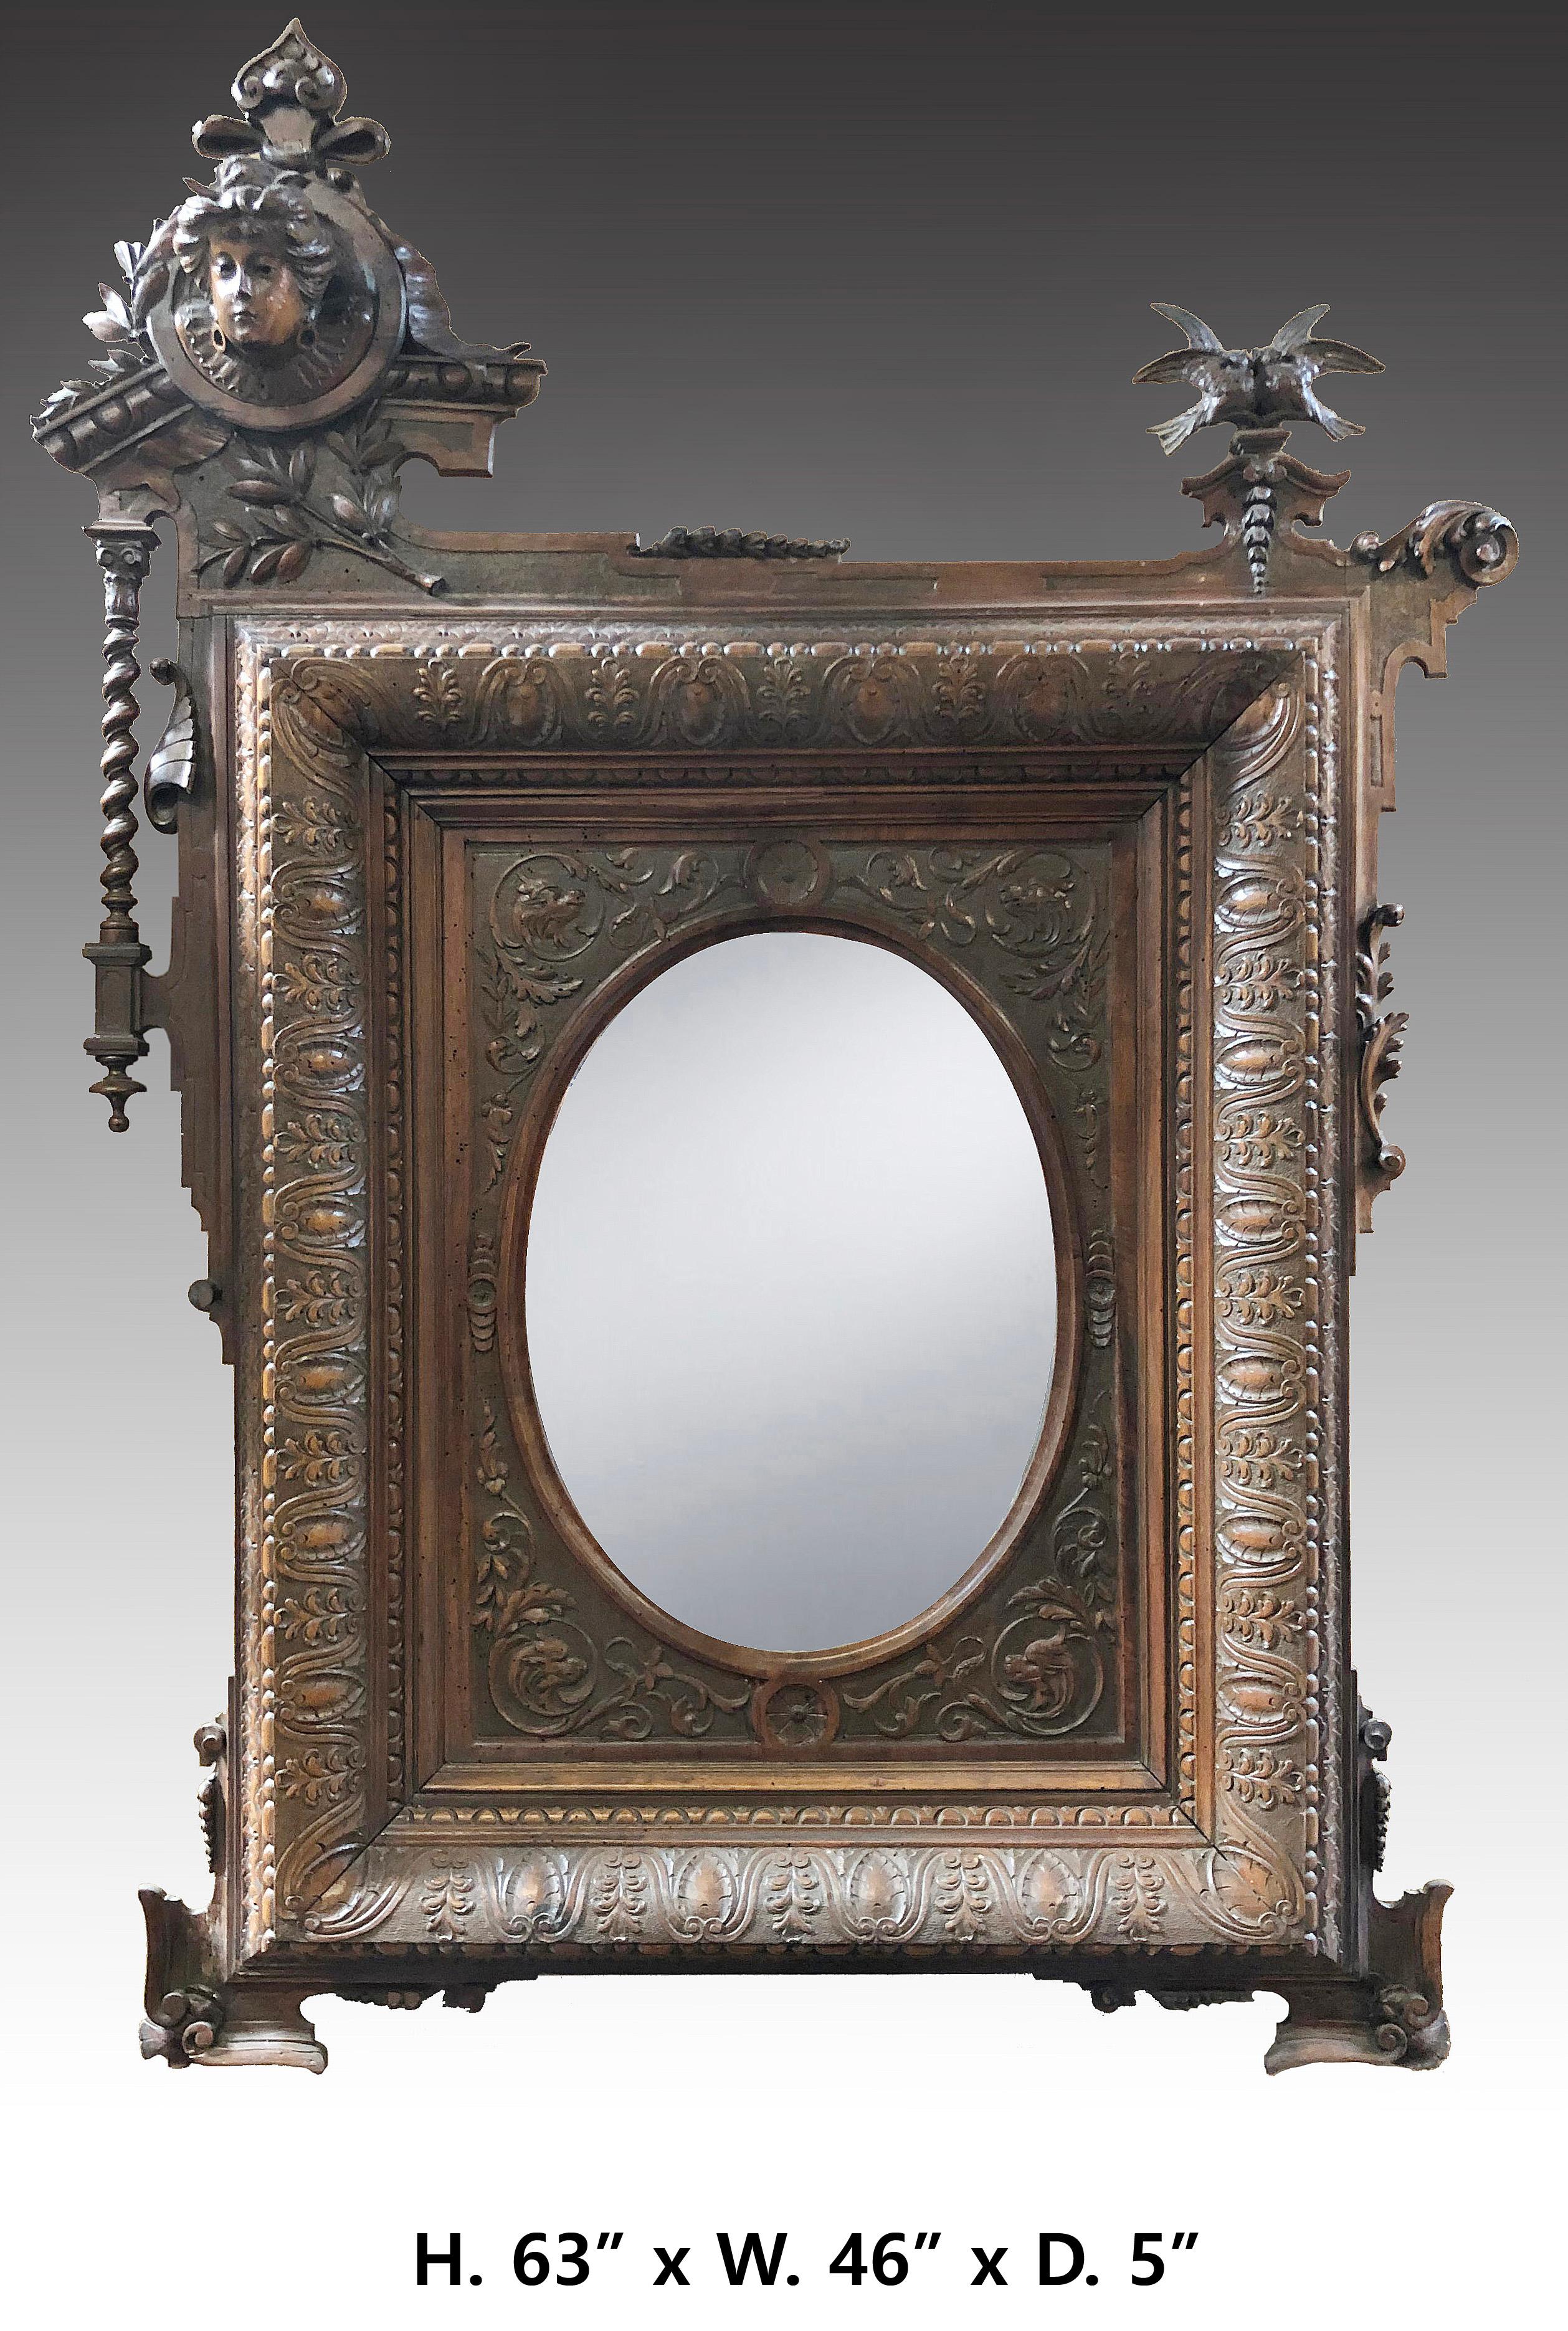 Très beau miroir en noyer sculpté de style Art Nouveau, unique en son genre...
Une attention méticuleuse a été accordée à chaque détail.
Circa 1900